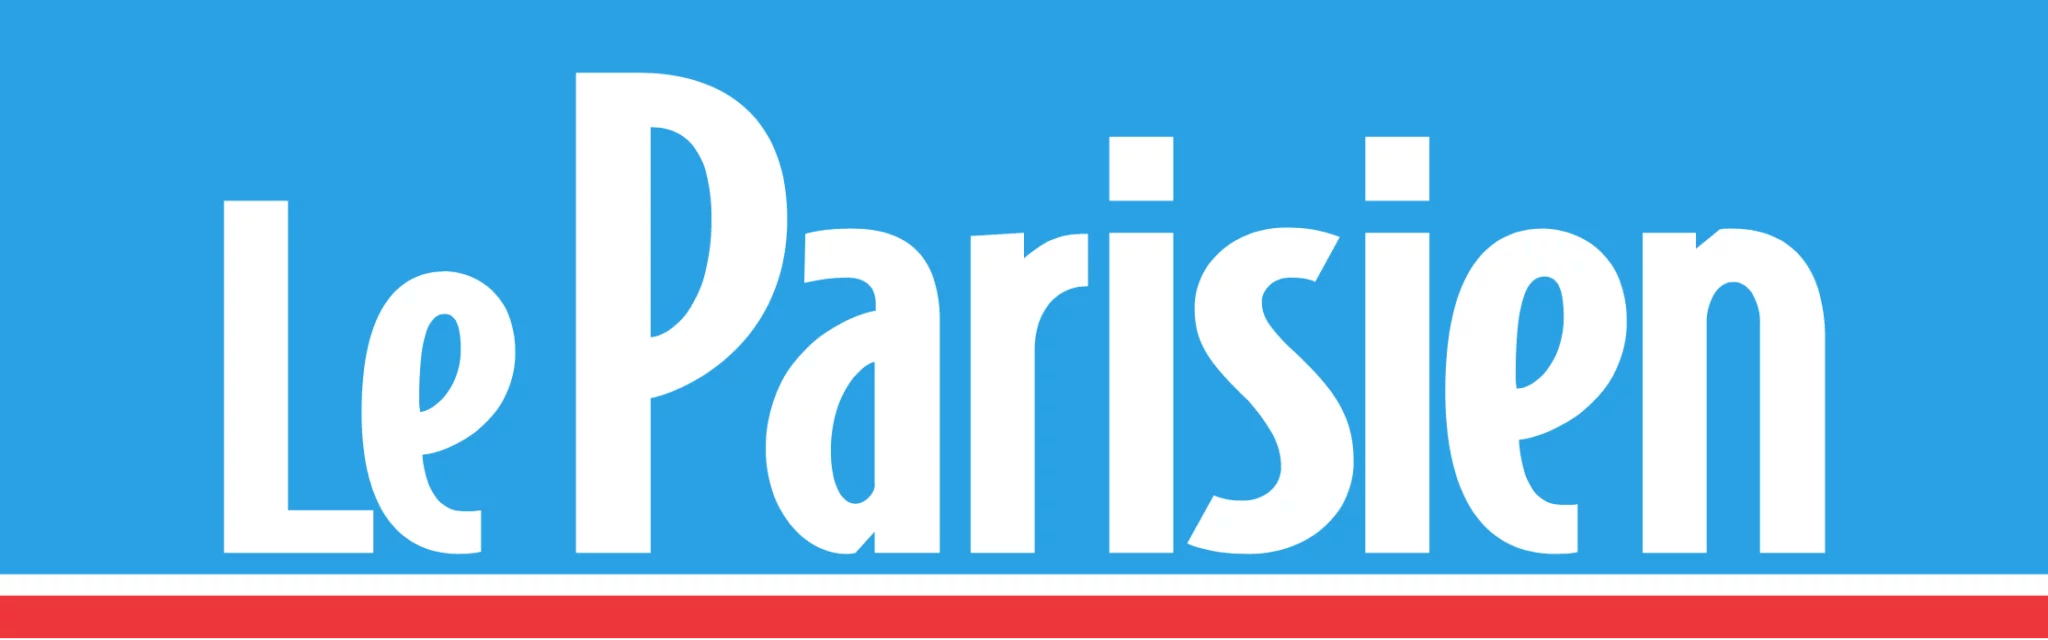 Le_Parisien_-_logo_2016-2048x640